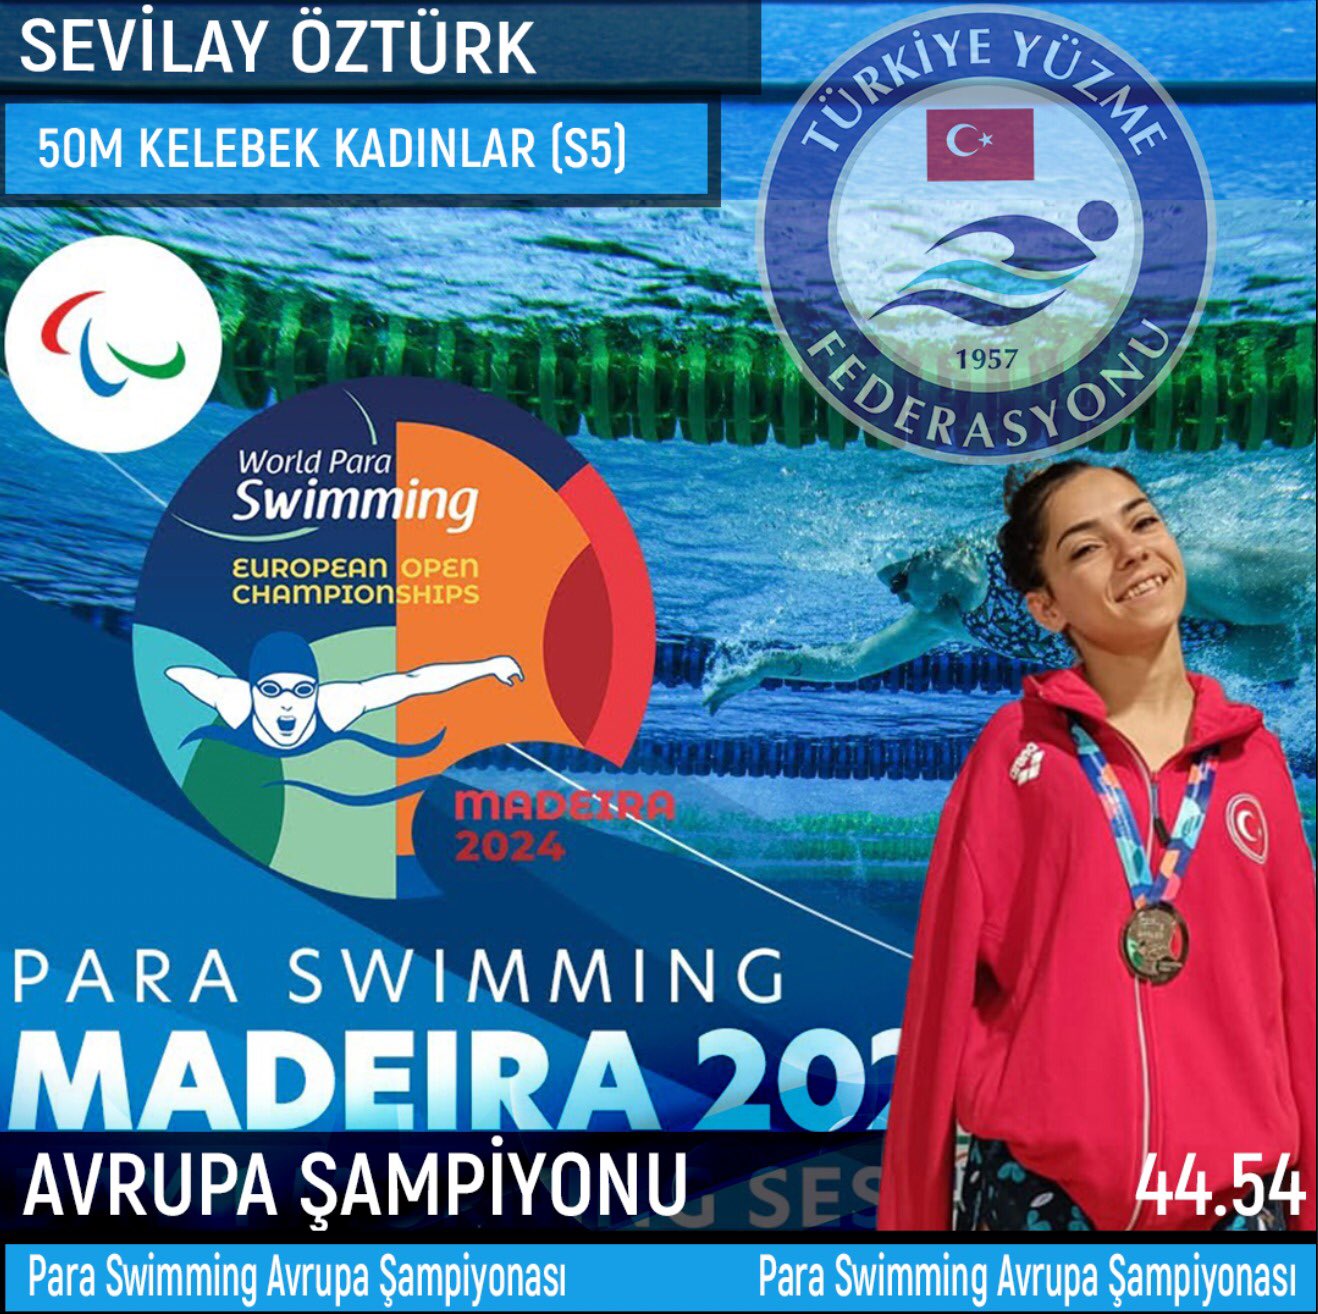 Sevilay Öztürk (1)